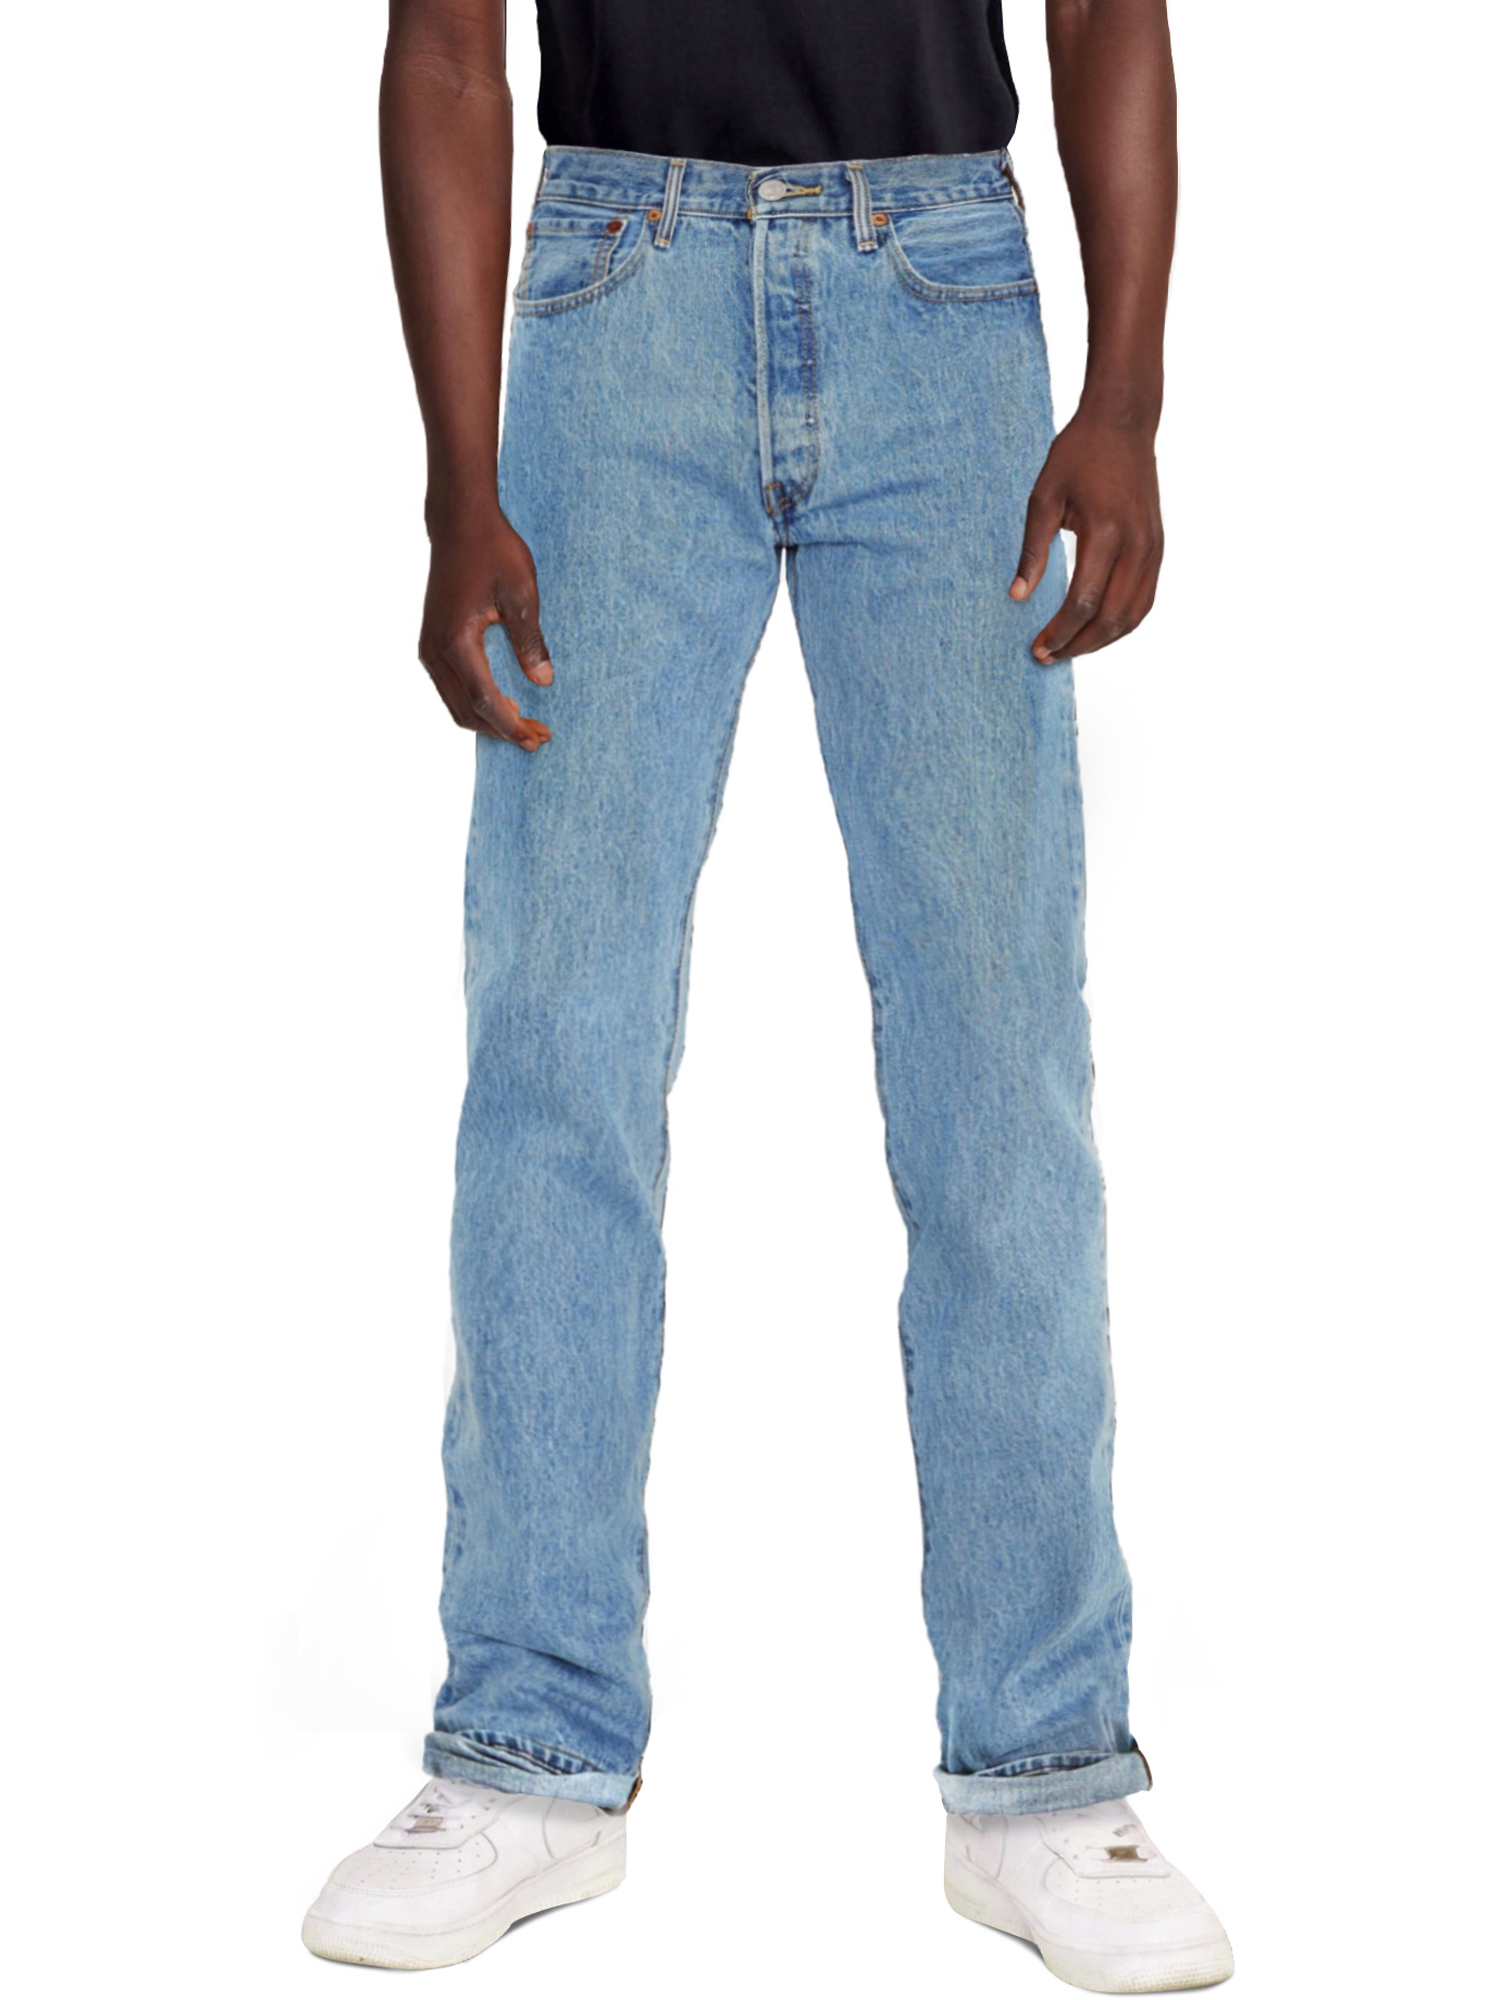 Levi's Men's 501 Original Fit Jeans - image 5 of 10